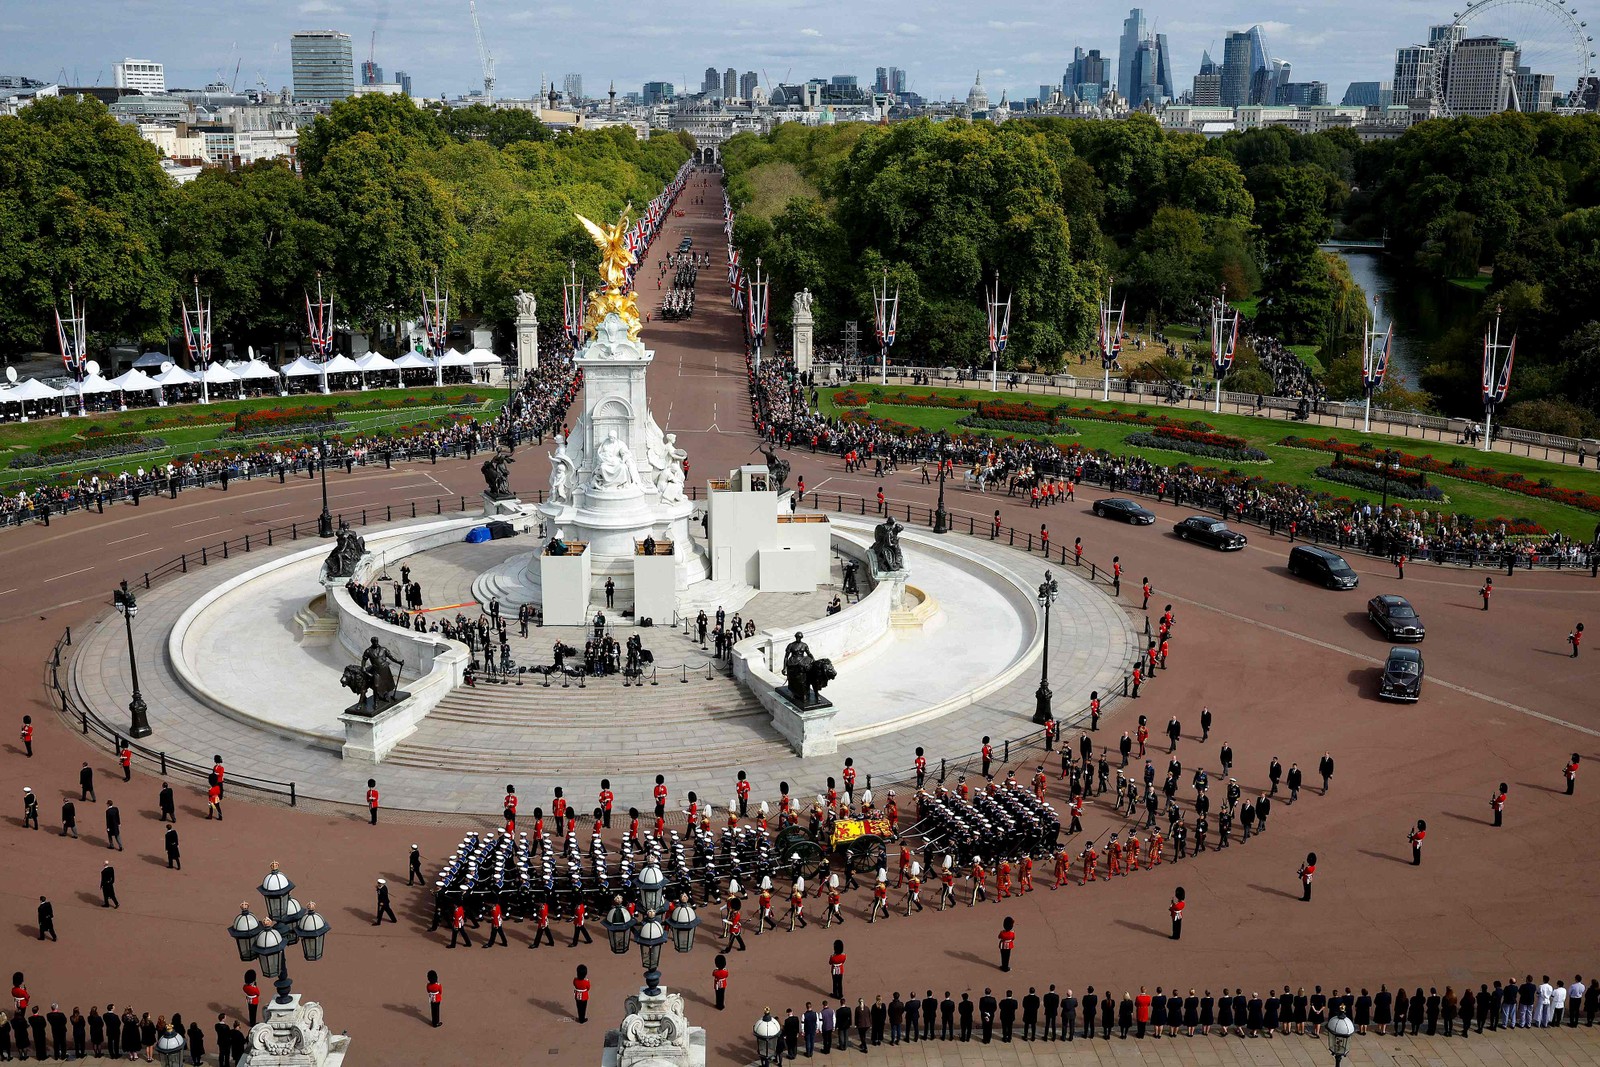 Cortejo fúnebre da Rainha Elizabeth II passa ao redor do Memorial da Rainha Vitória  — Foto: Chip Somodevilla / POOL / AFP